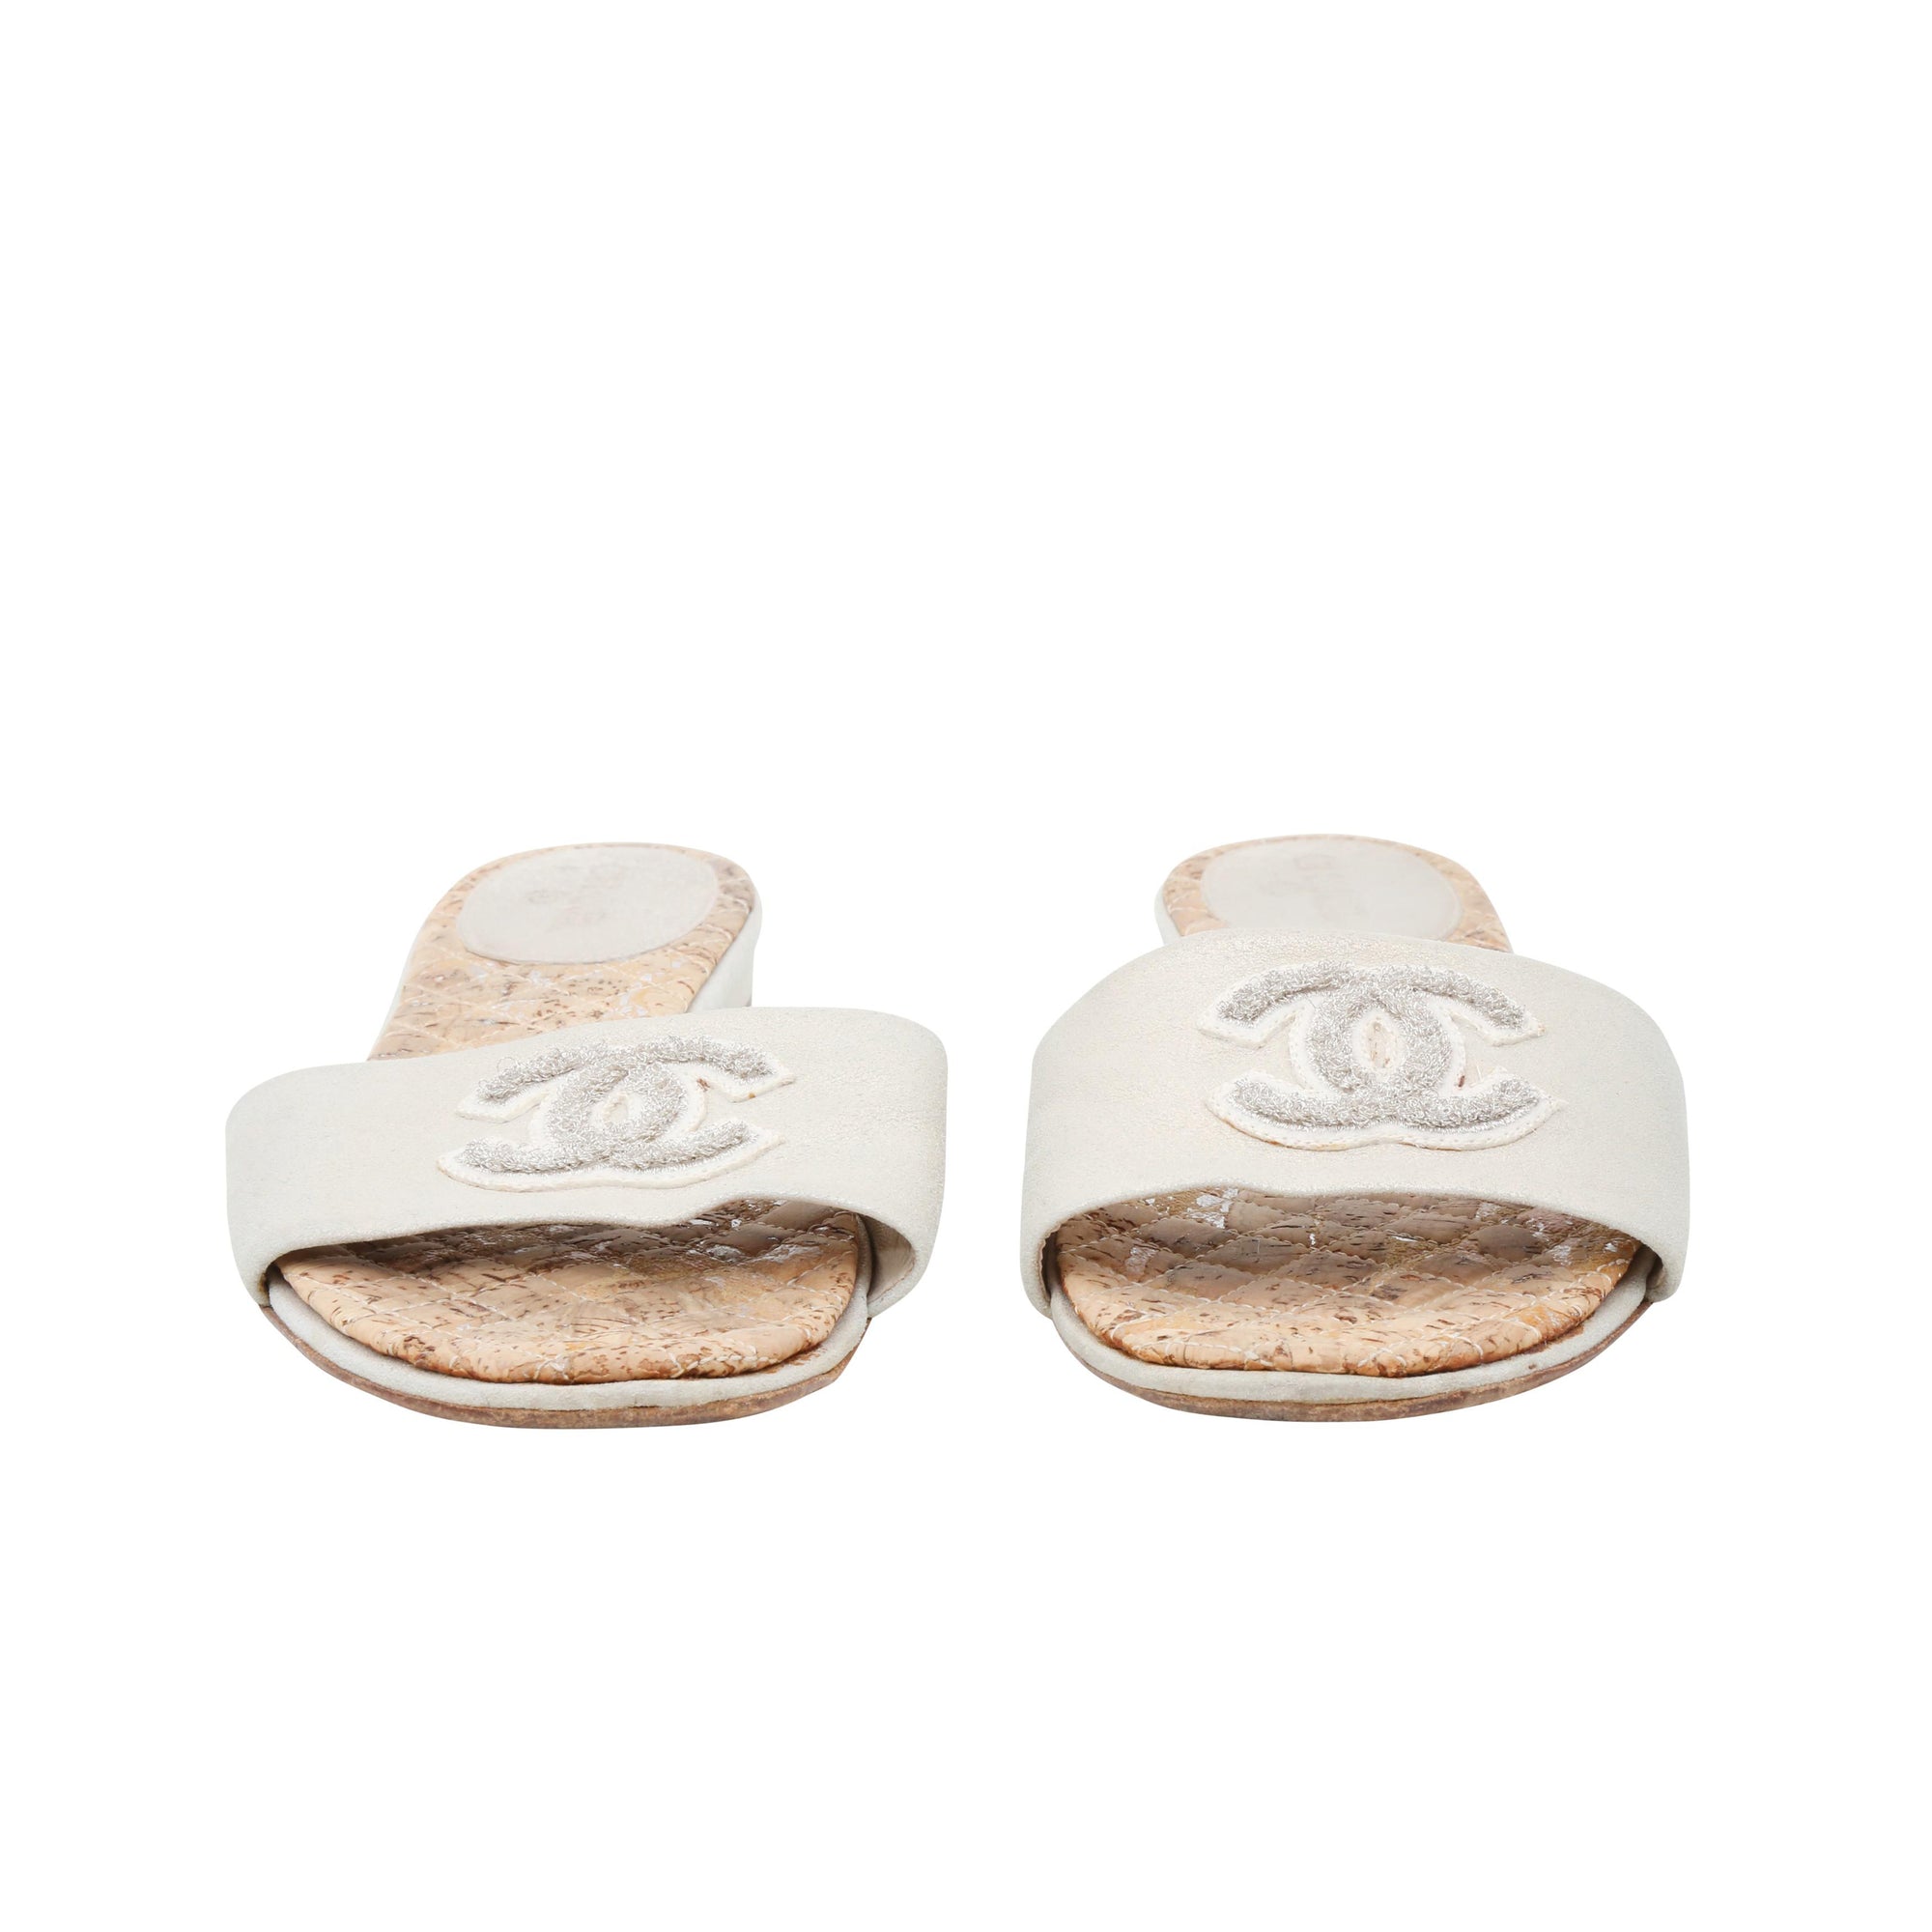 Louis Vuitton Monogram Slides Sandals Flip Flop Gold Sz 35,5 Eu